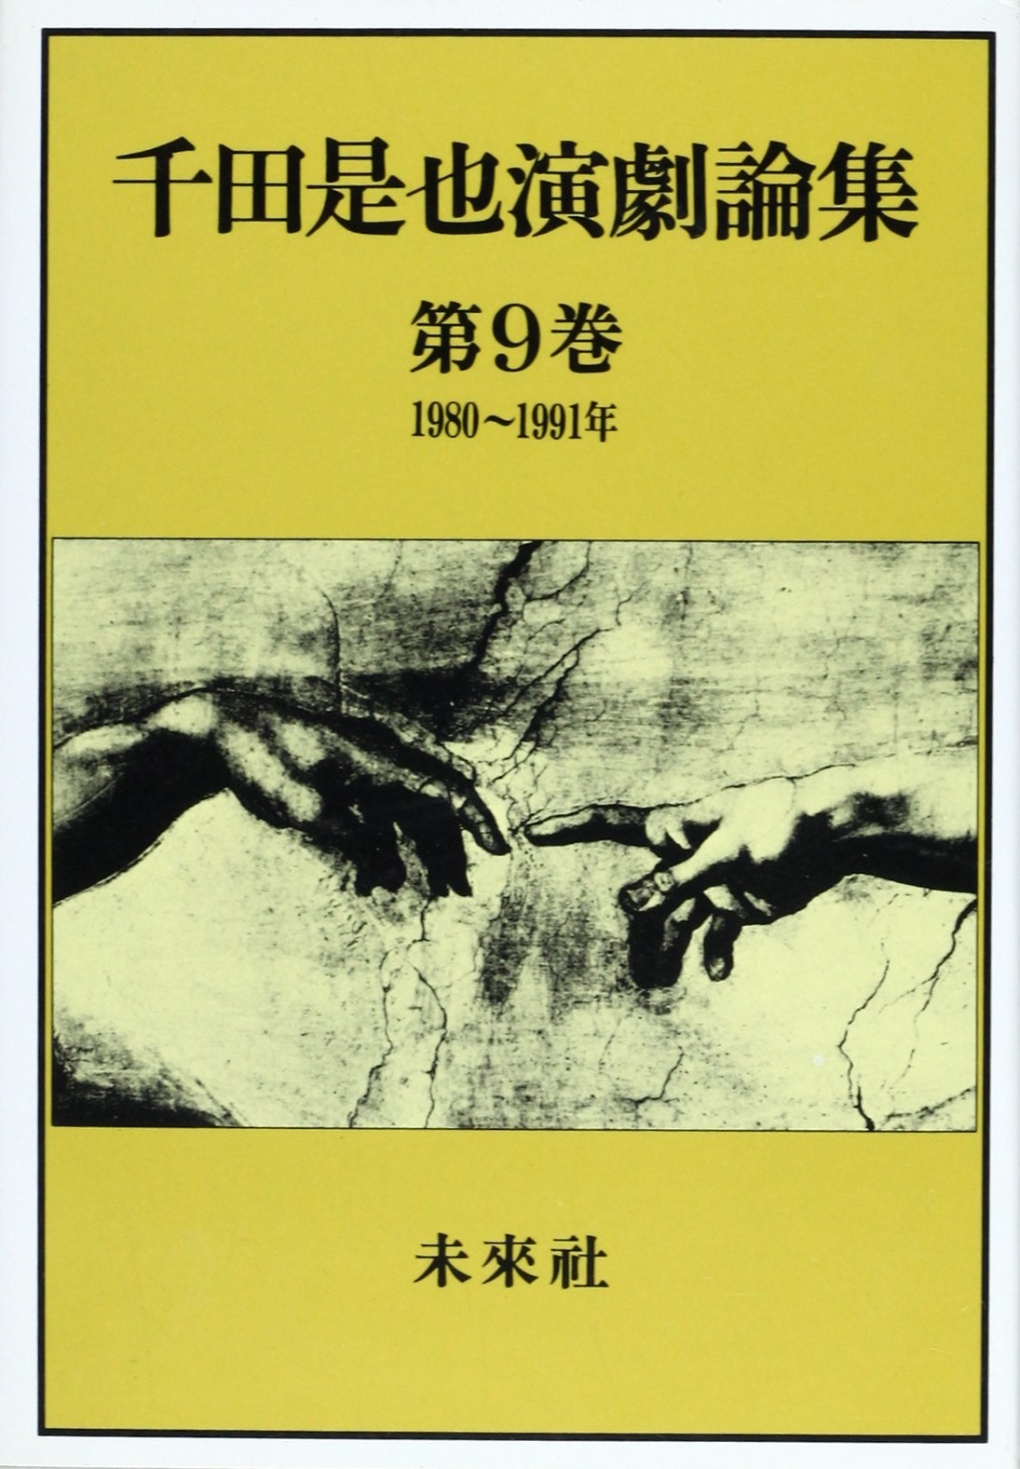 千田是也演劇論集第９巻　1981-1991年